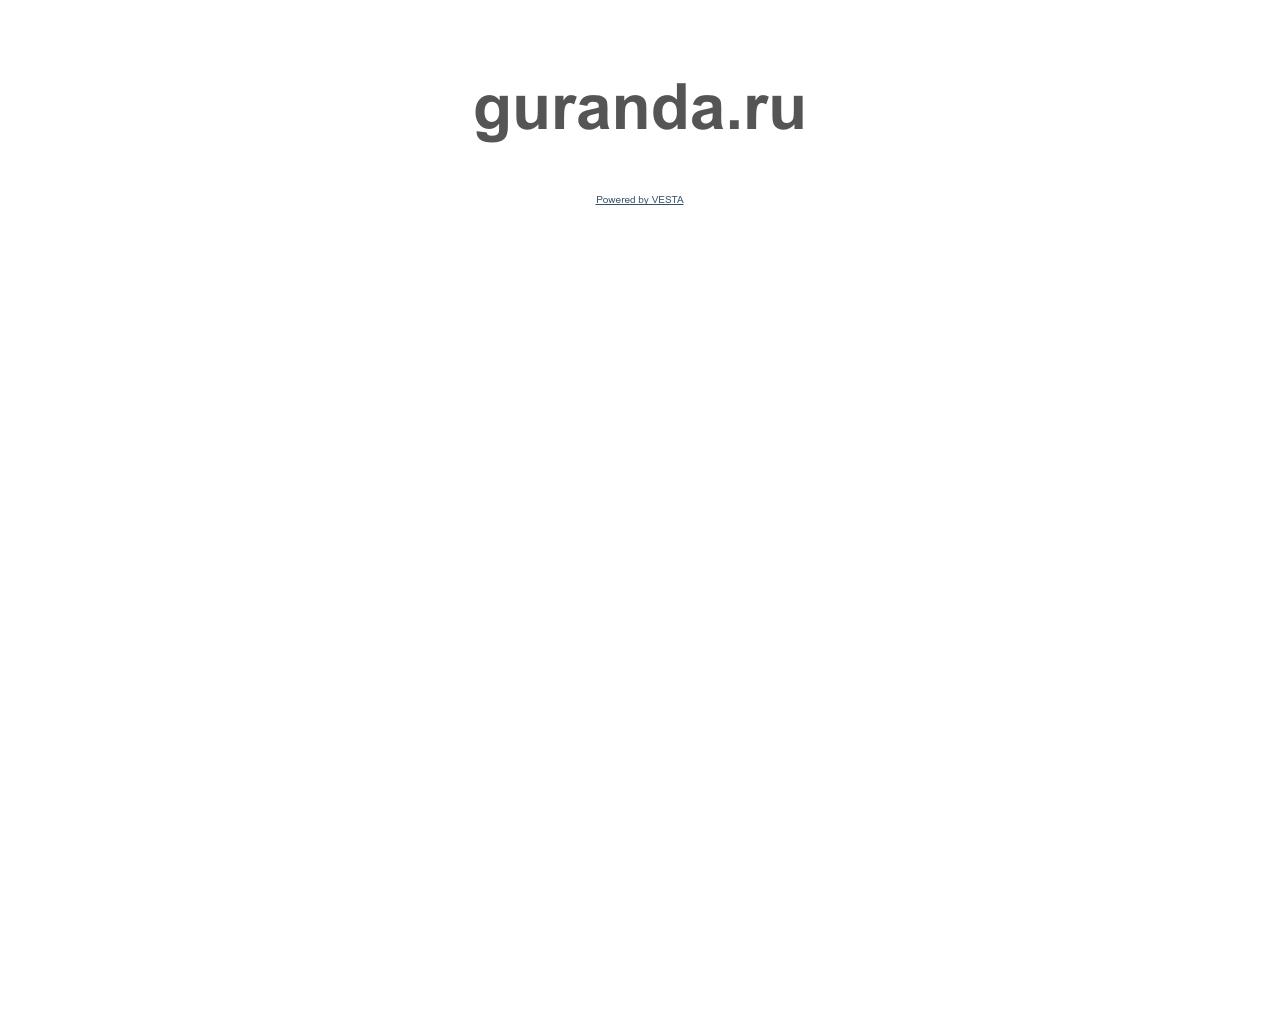 Изображение сайта guranda.ru в разрешении 1280x1024